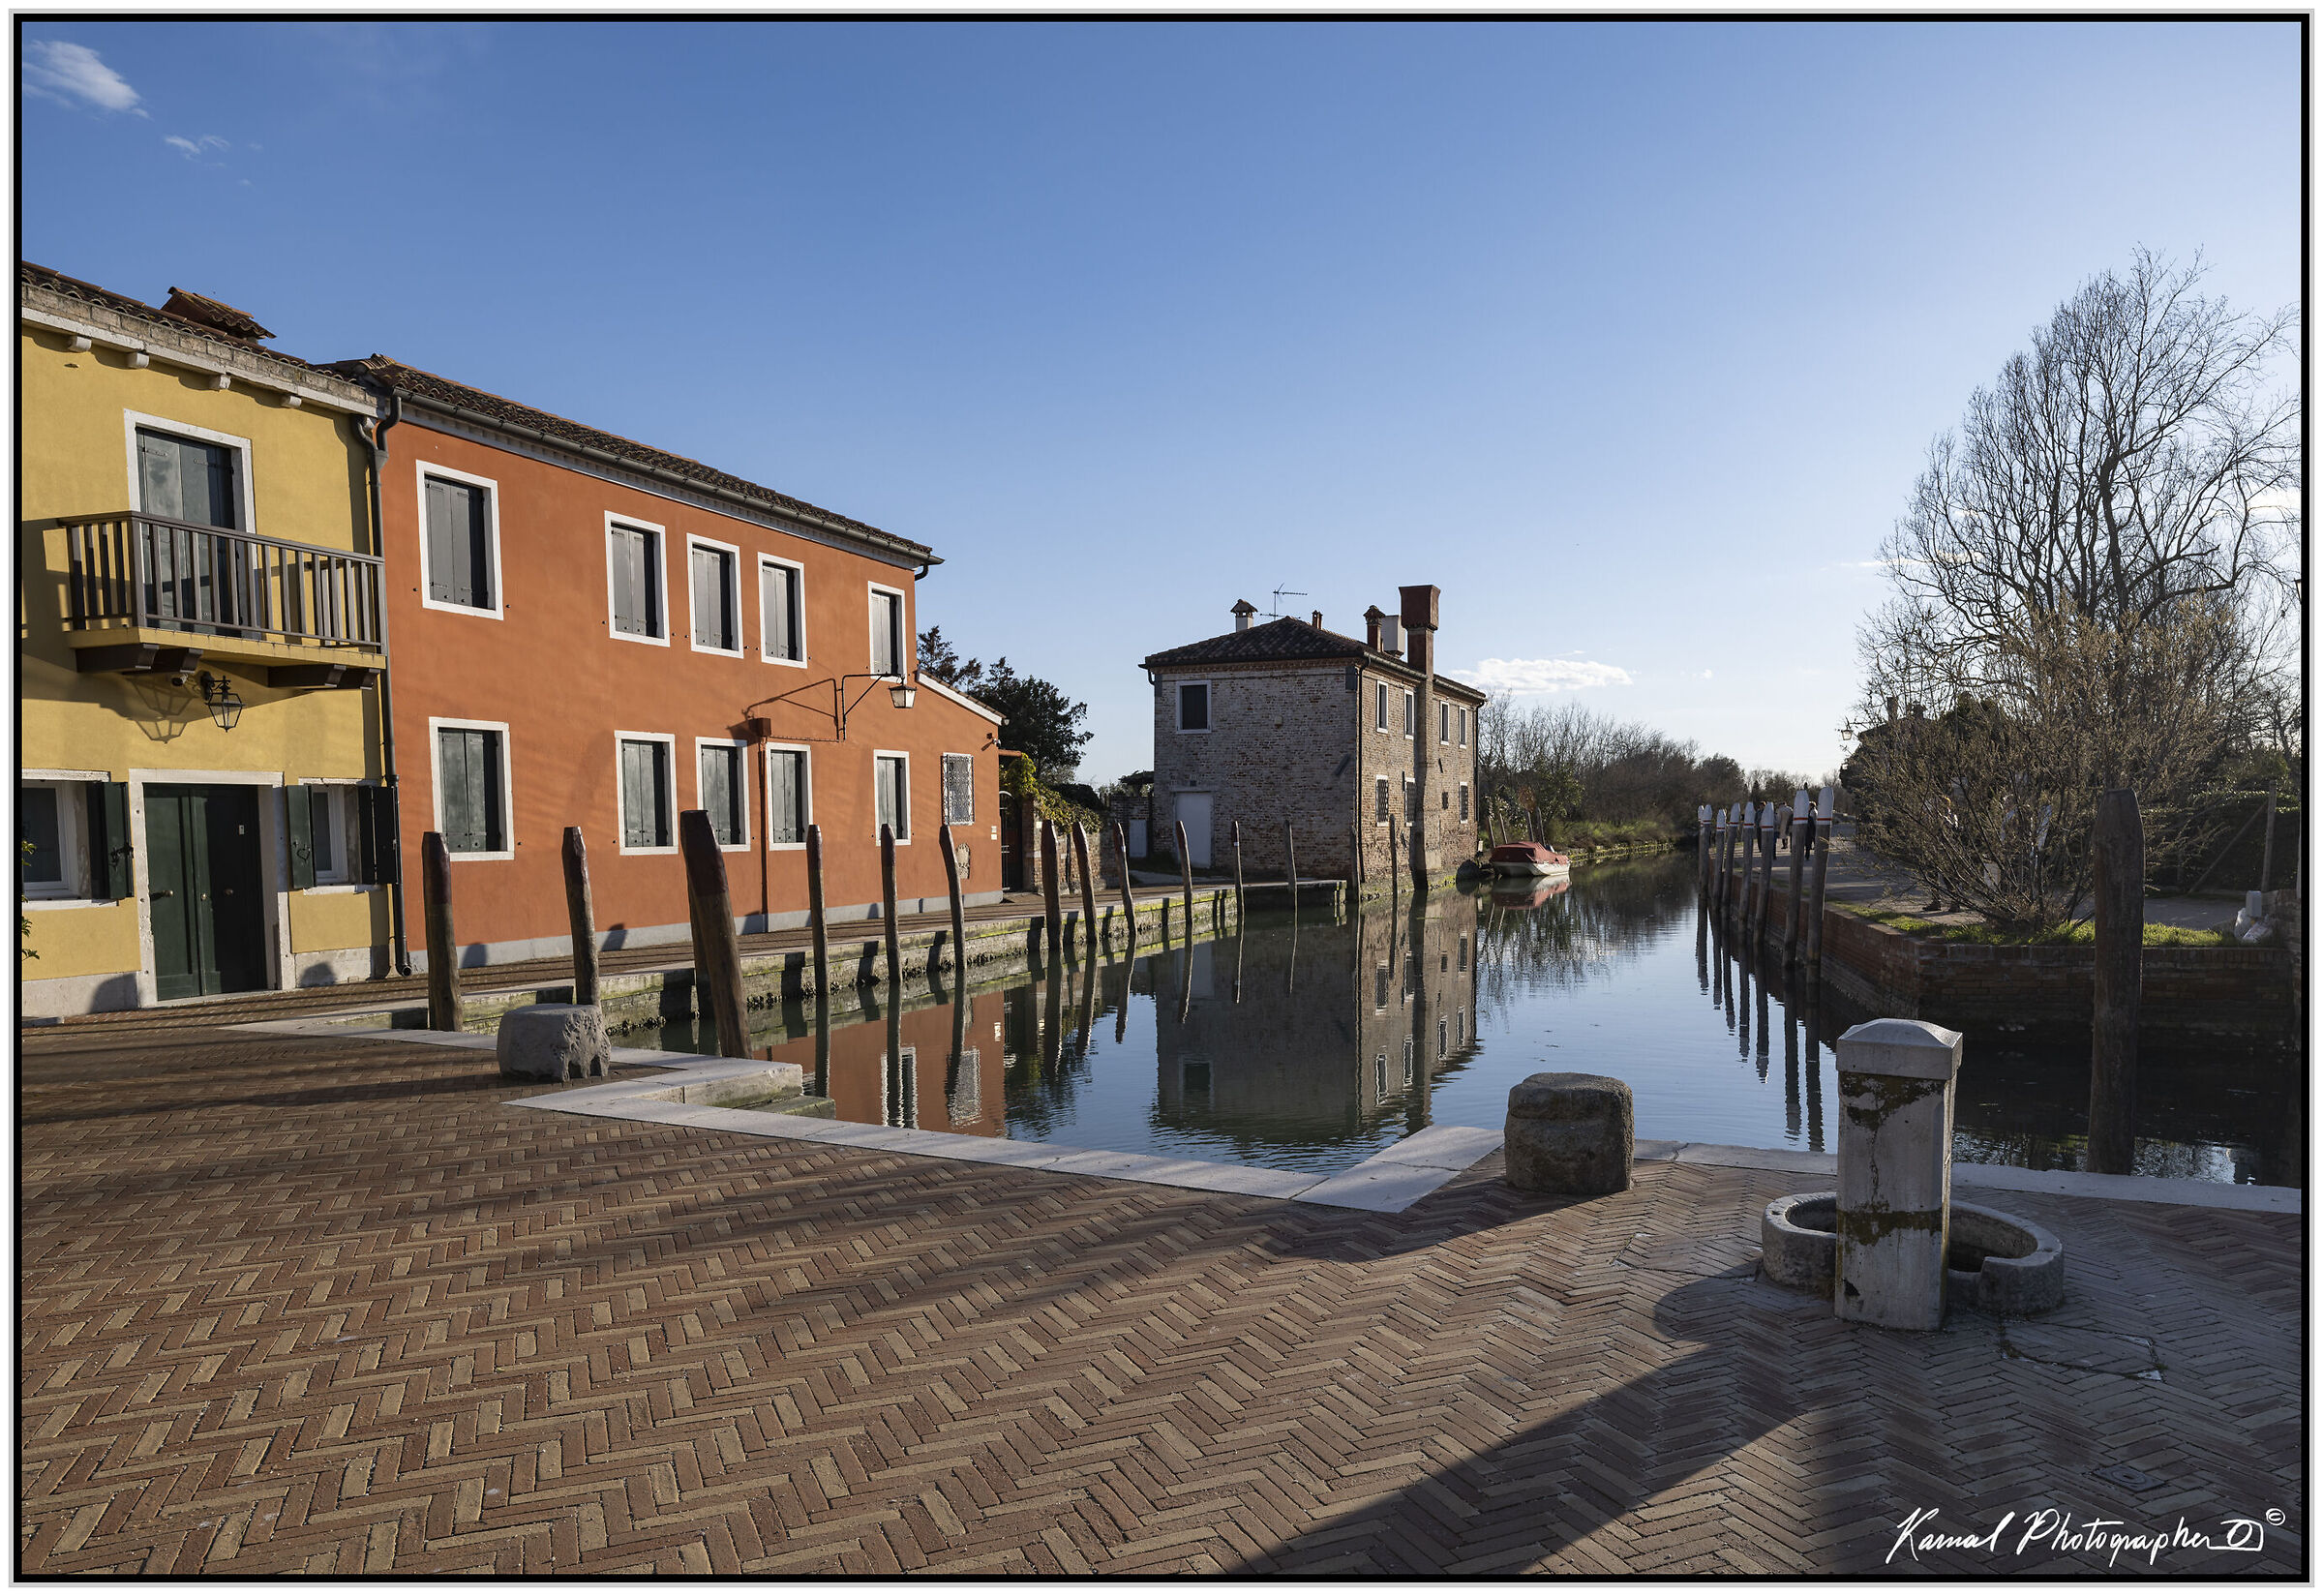 Torcello , Venice...